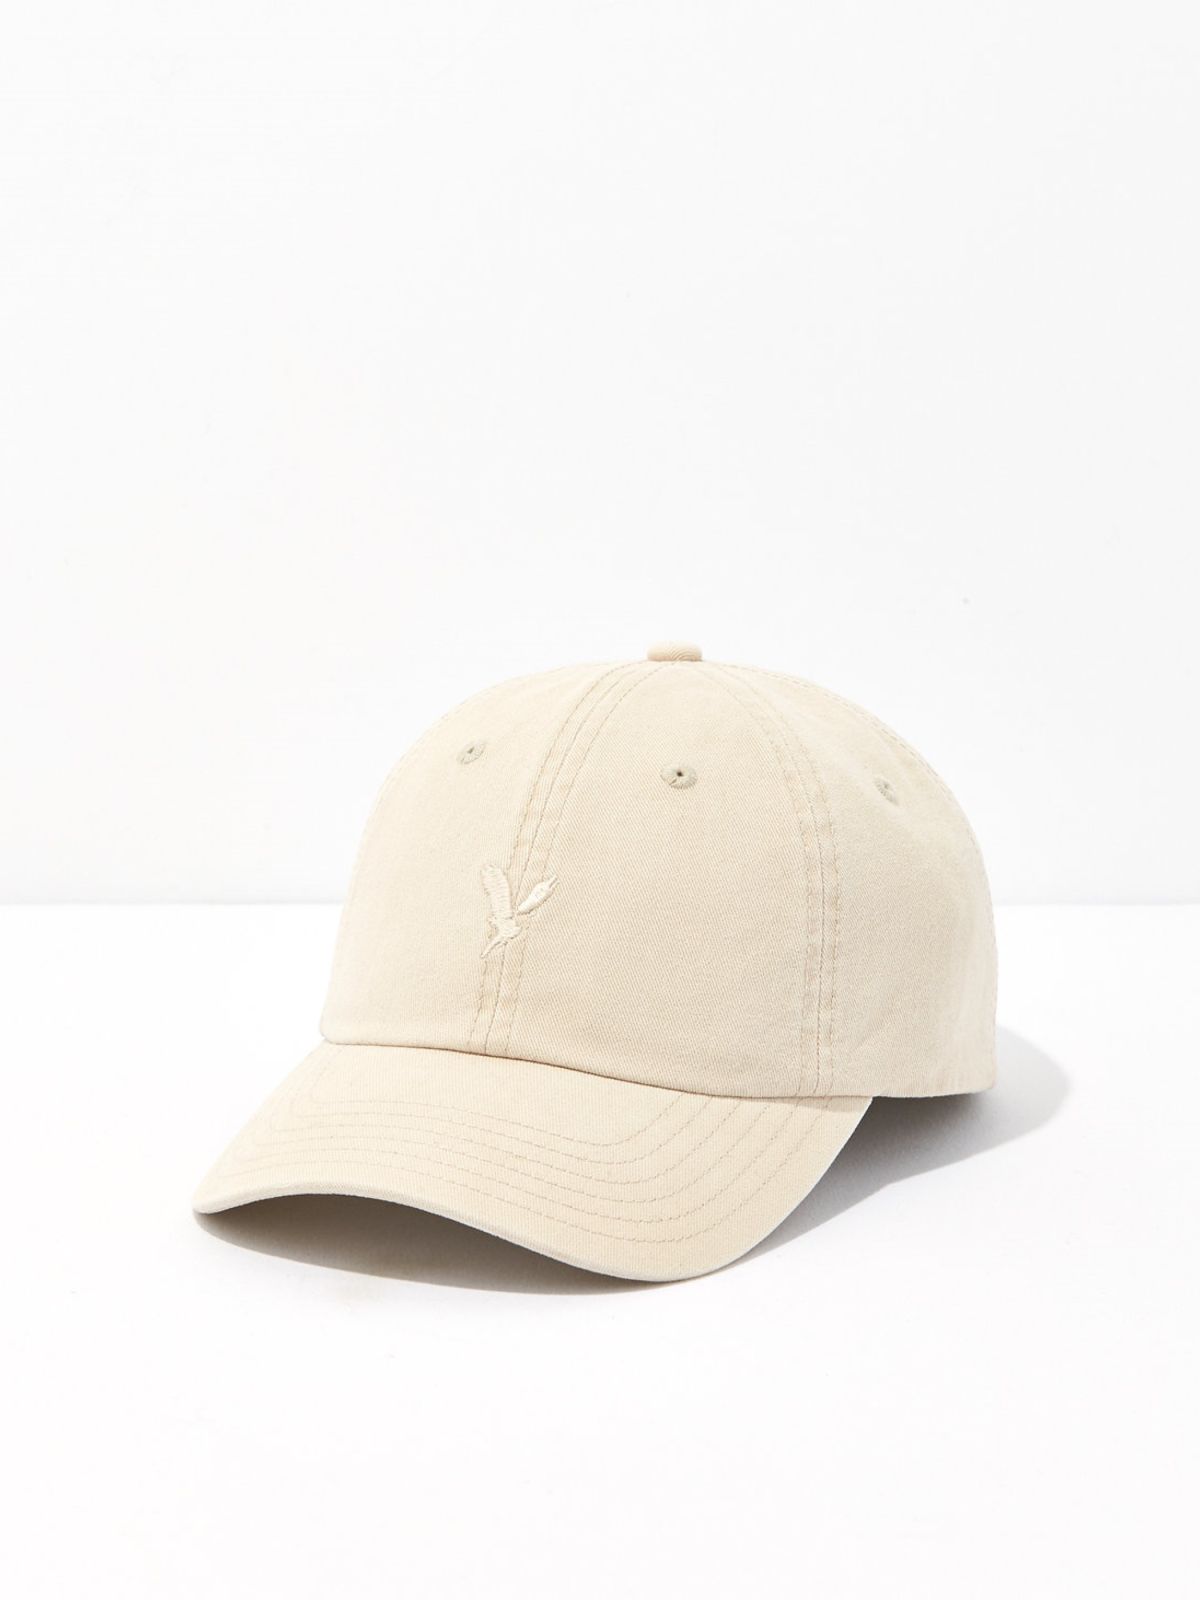  כובע מצחייה אקטיב עם לוגו / גברים של AMERICAN EAGLE